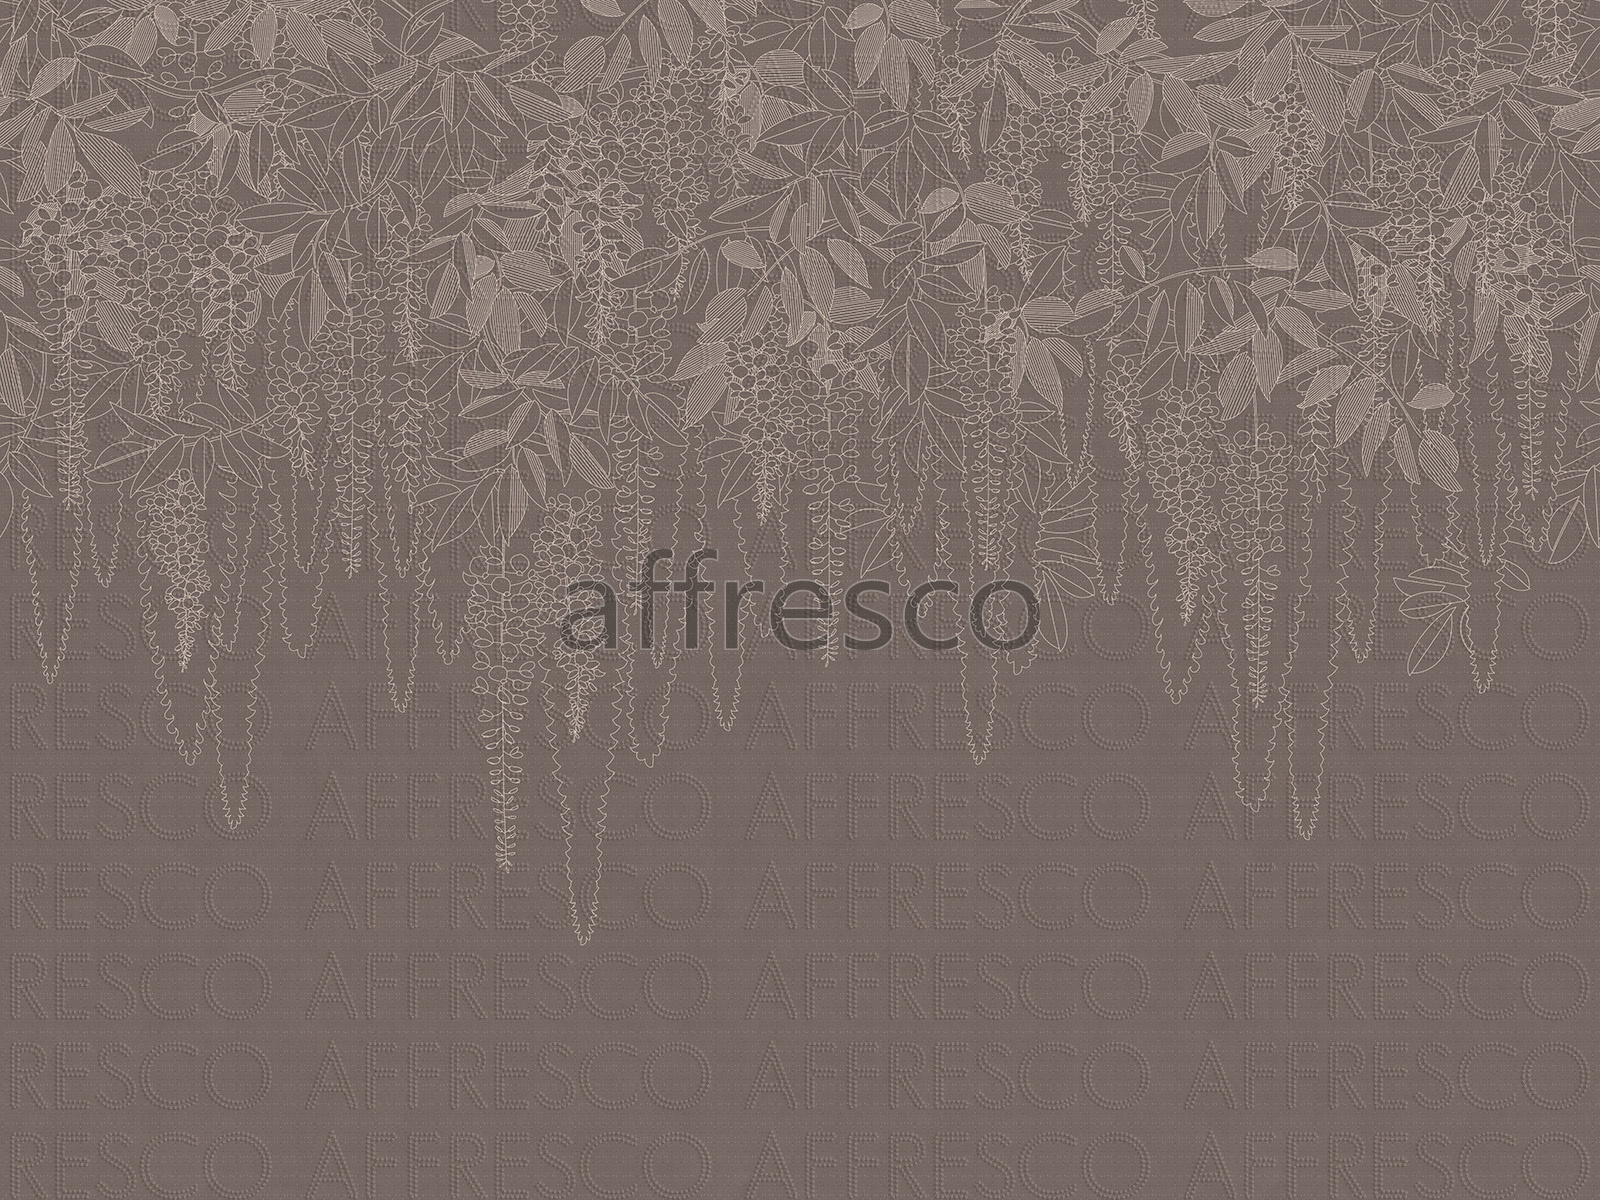 AF2147-COL2 | Line Art | Affresco Factory